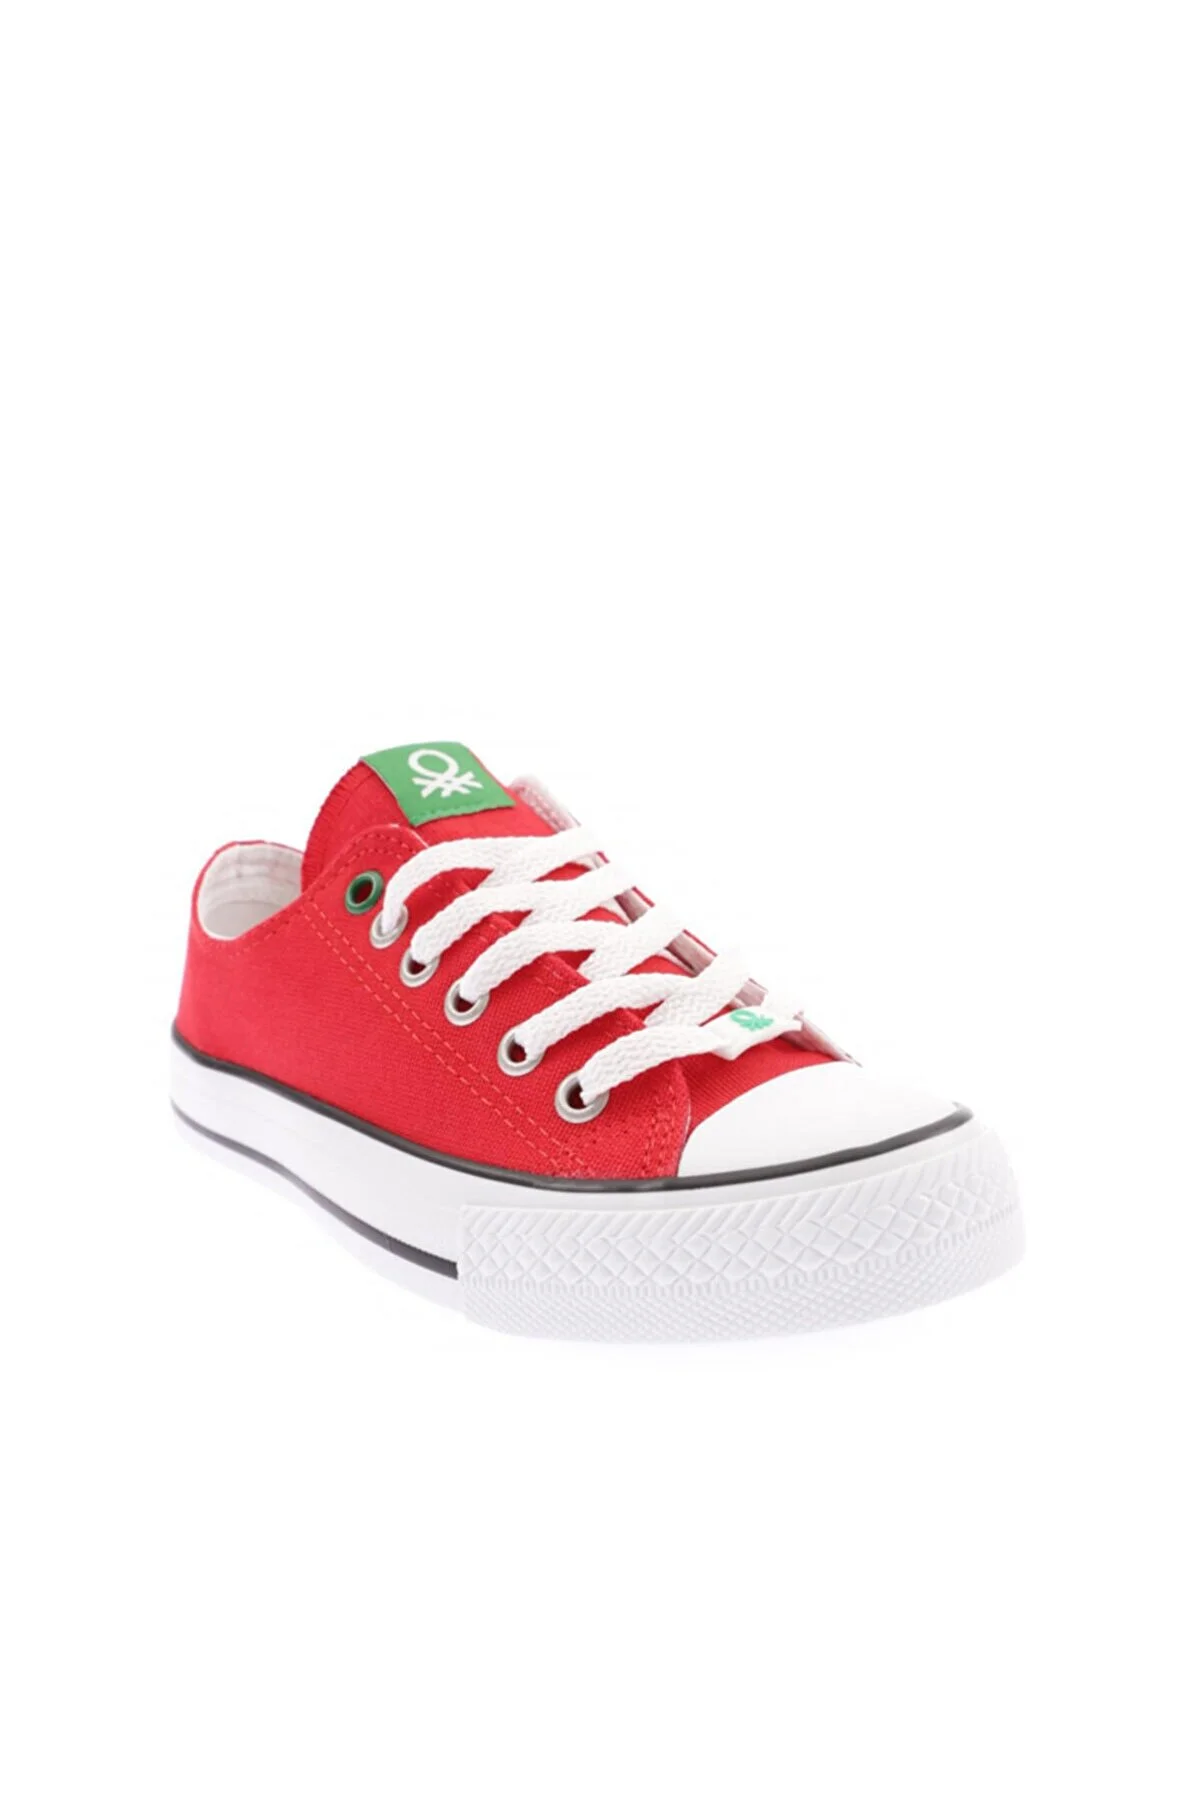 Kadın Spor ayakkabı-BN-30196-Kırmızı - Thumbnail